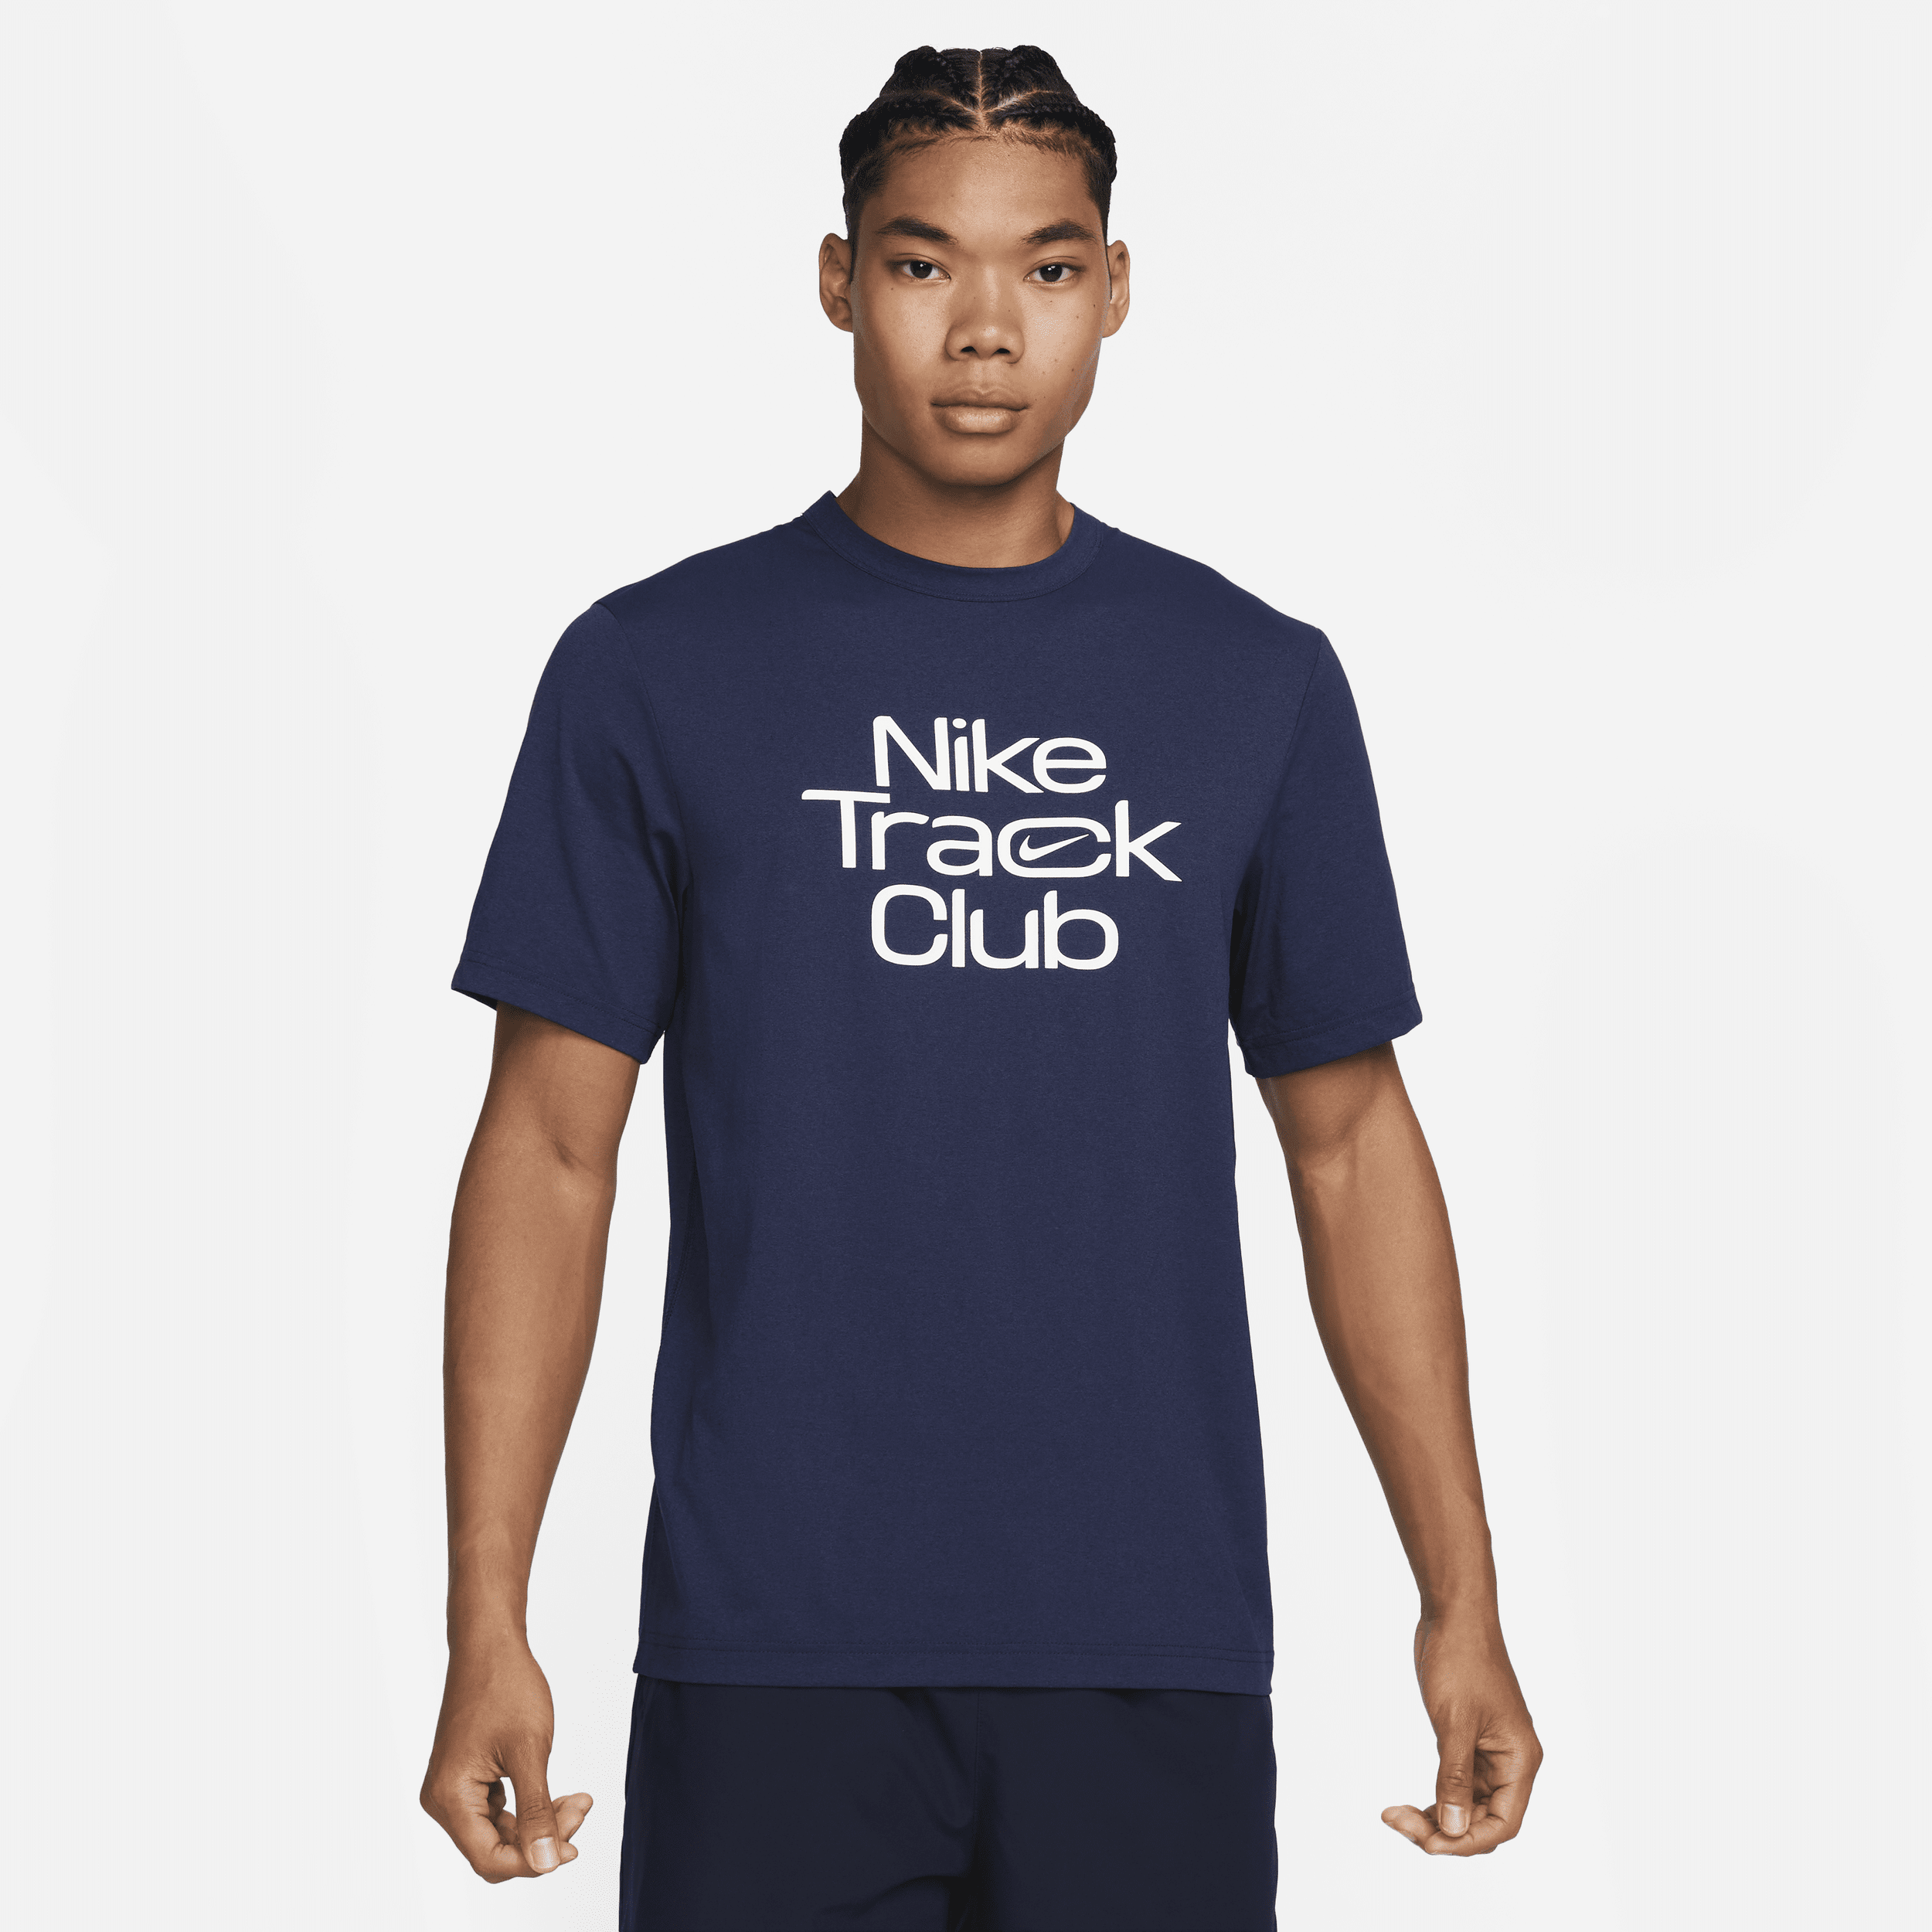 Maglia da running Dri-FIT a manica corta Nike Track Club – Uomo - Blu